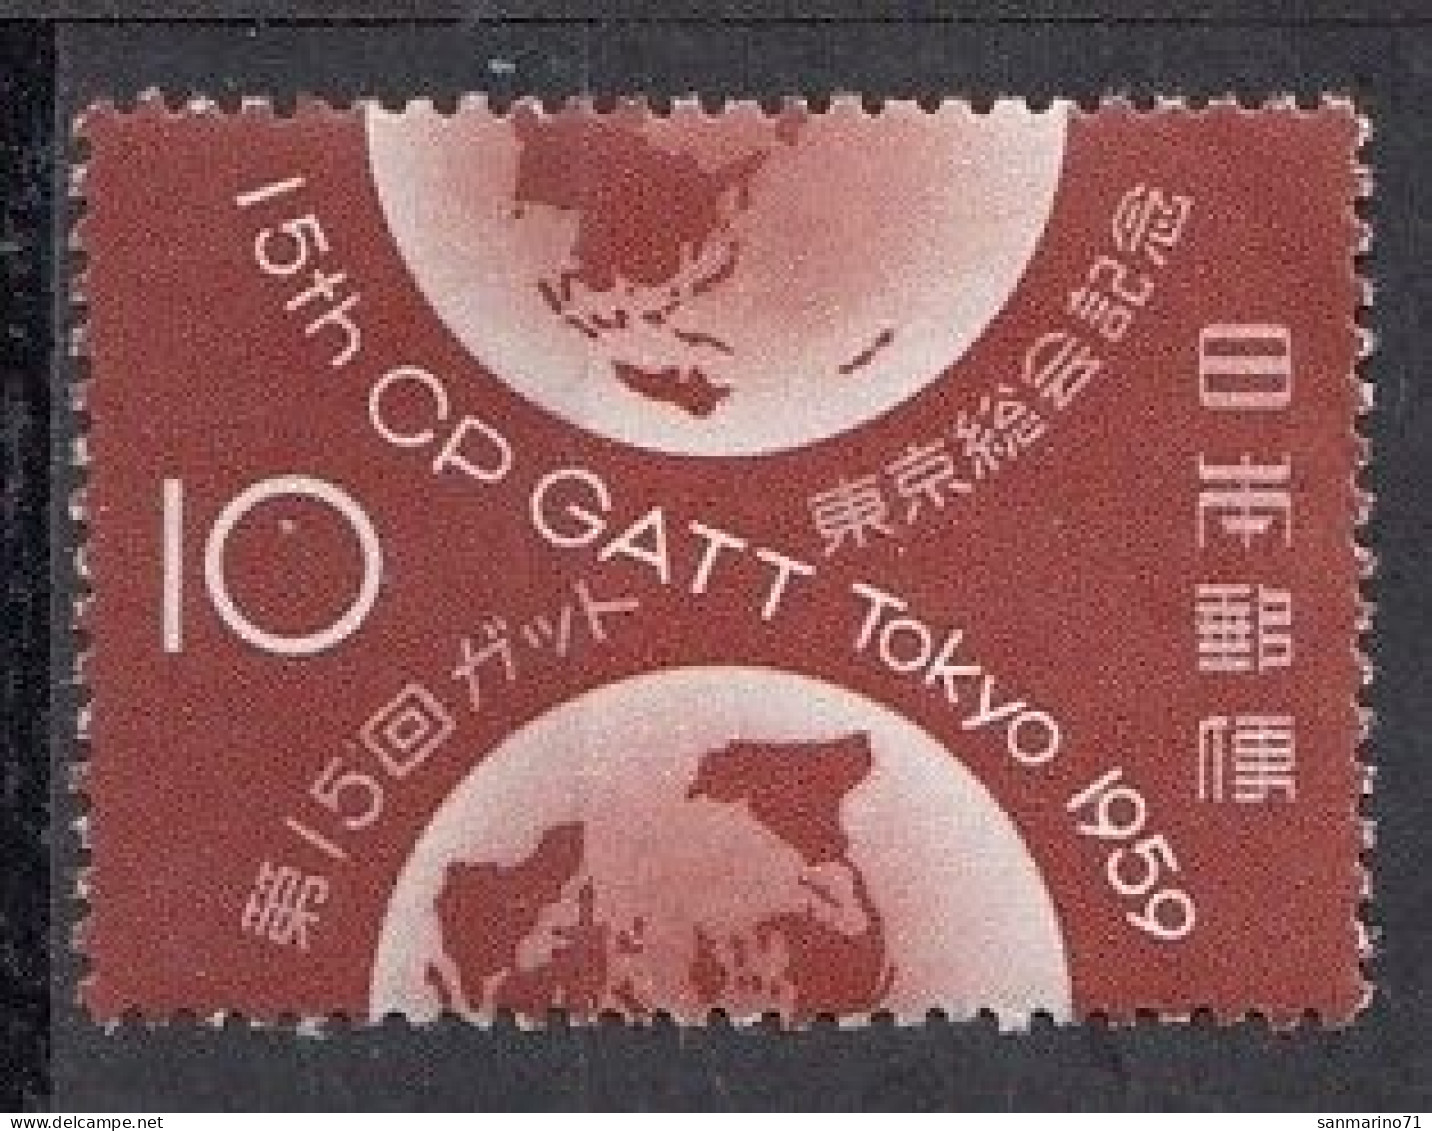 JAPAN 716,unused (**) - Unused Stamps